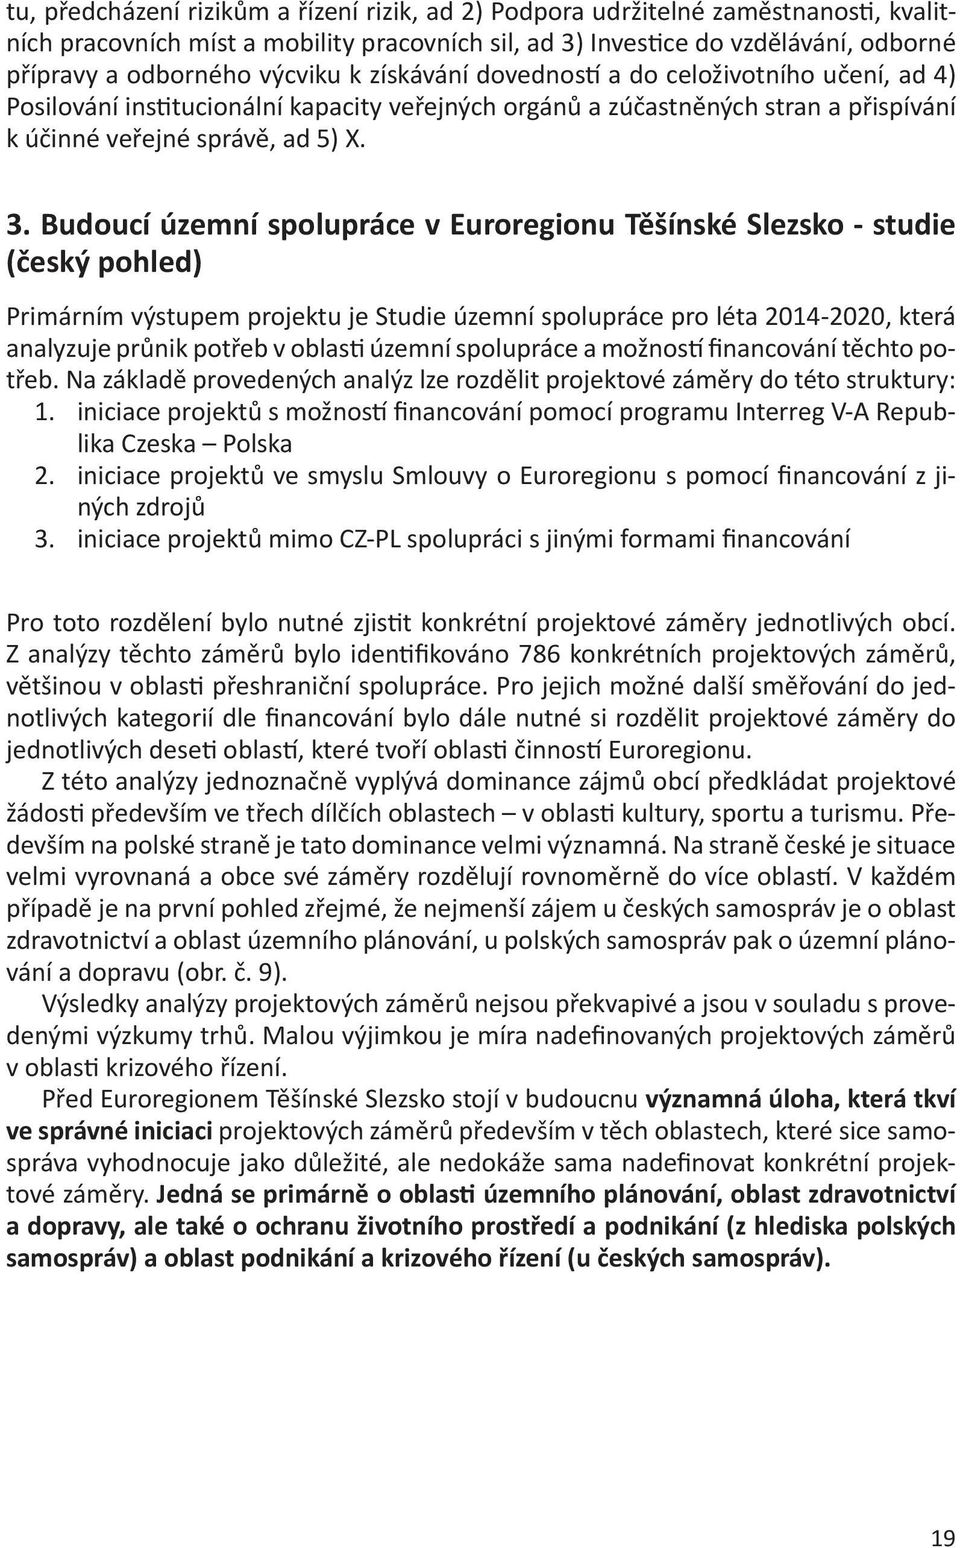 Budoucí územní spolupráce v Euroregionu Těšínské Slezsko - studie (český pohled) Primárním výstupem projektu je Studie územní spolupráce pro léta 2014-2020, která analyzuje průnik potřeb v oblasti